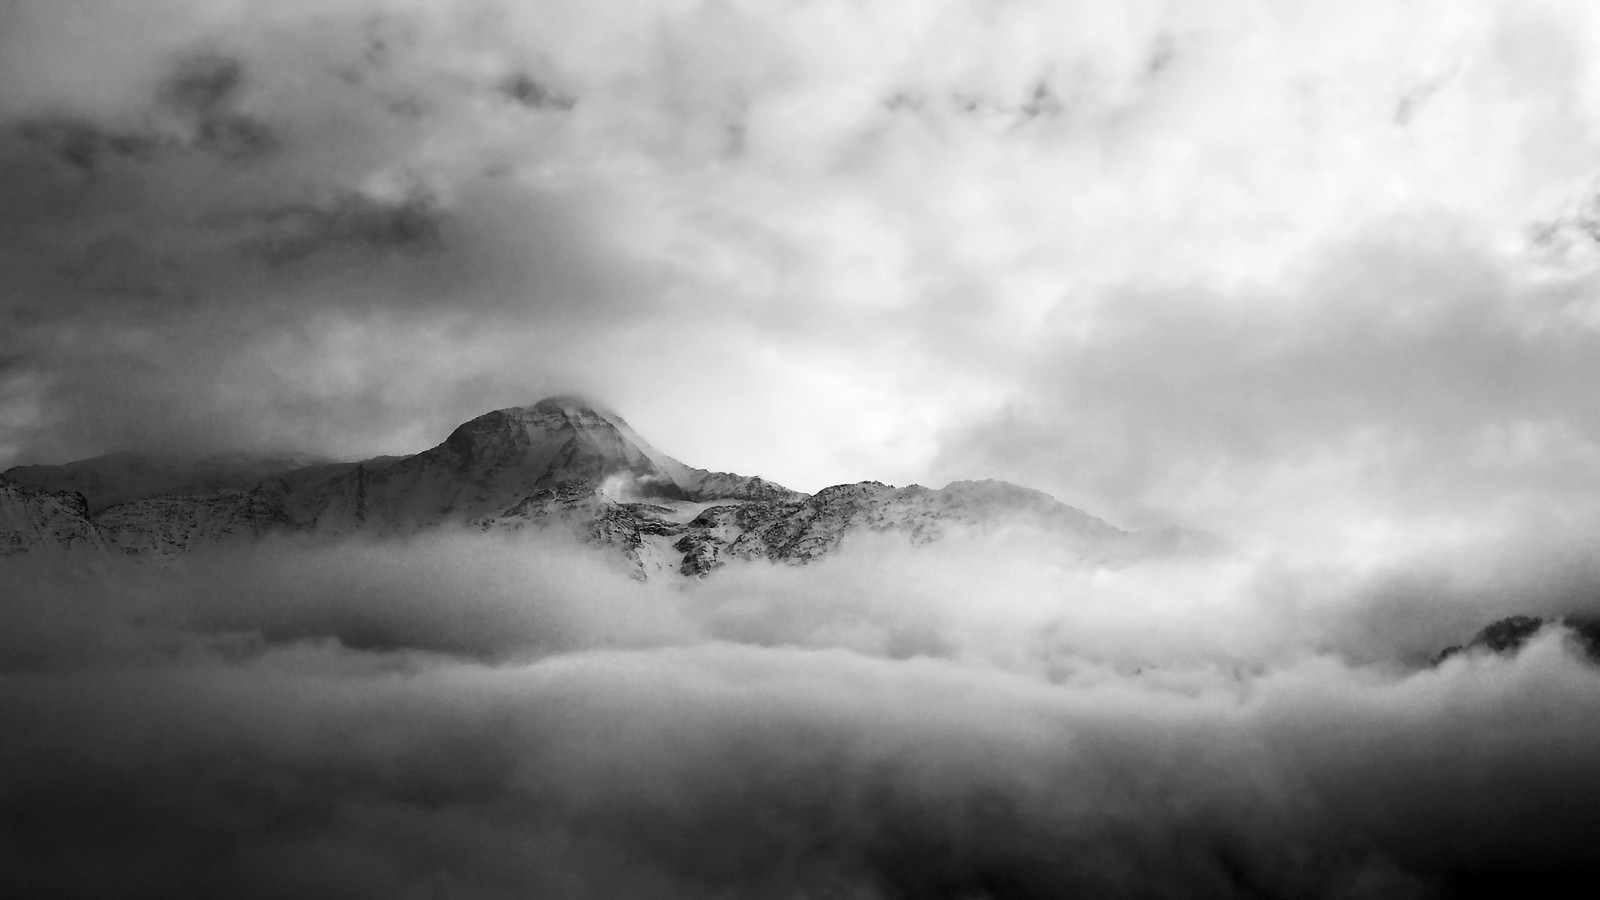 General 1600x900 mountains nature clouds landscape monochrome